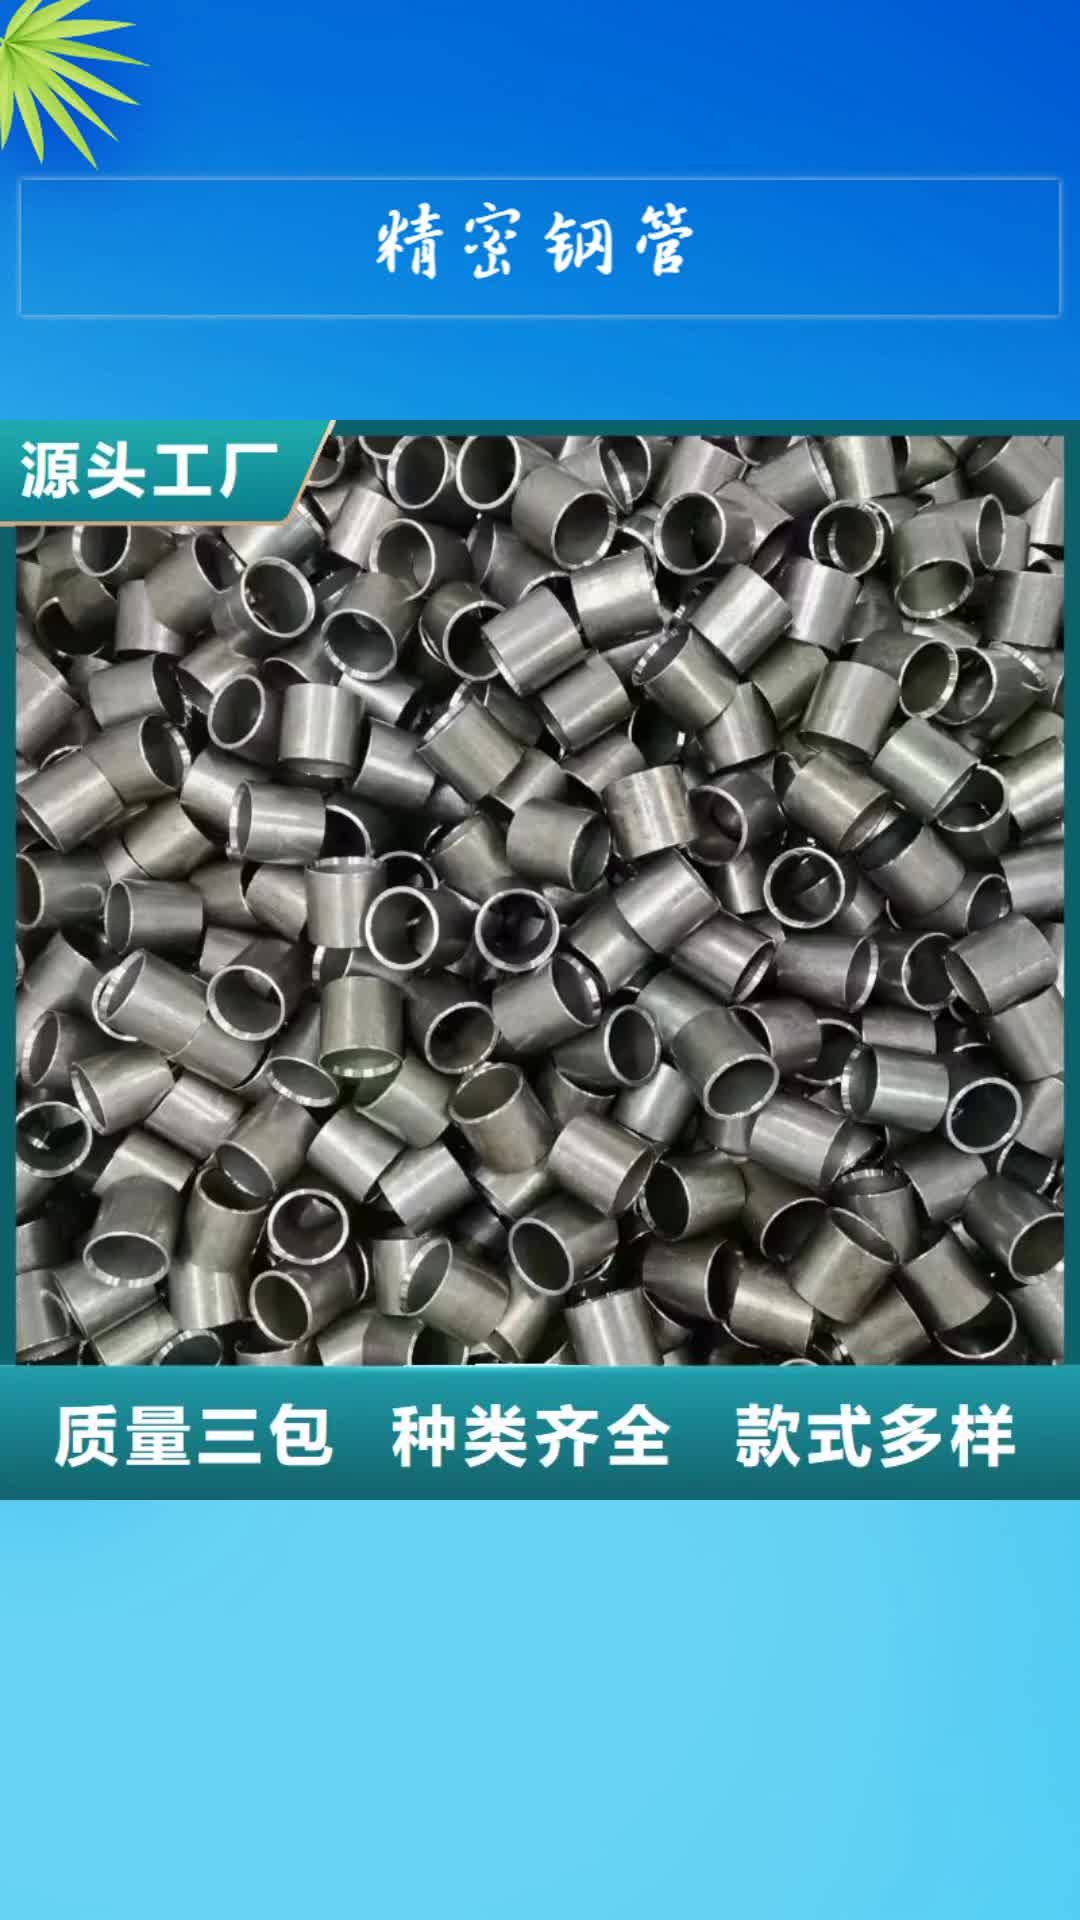 北京【精密钢管】 合金管专业生产设备